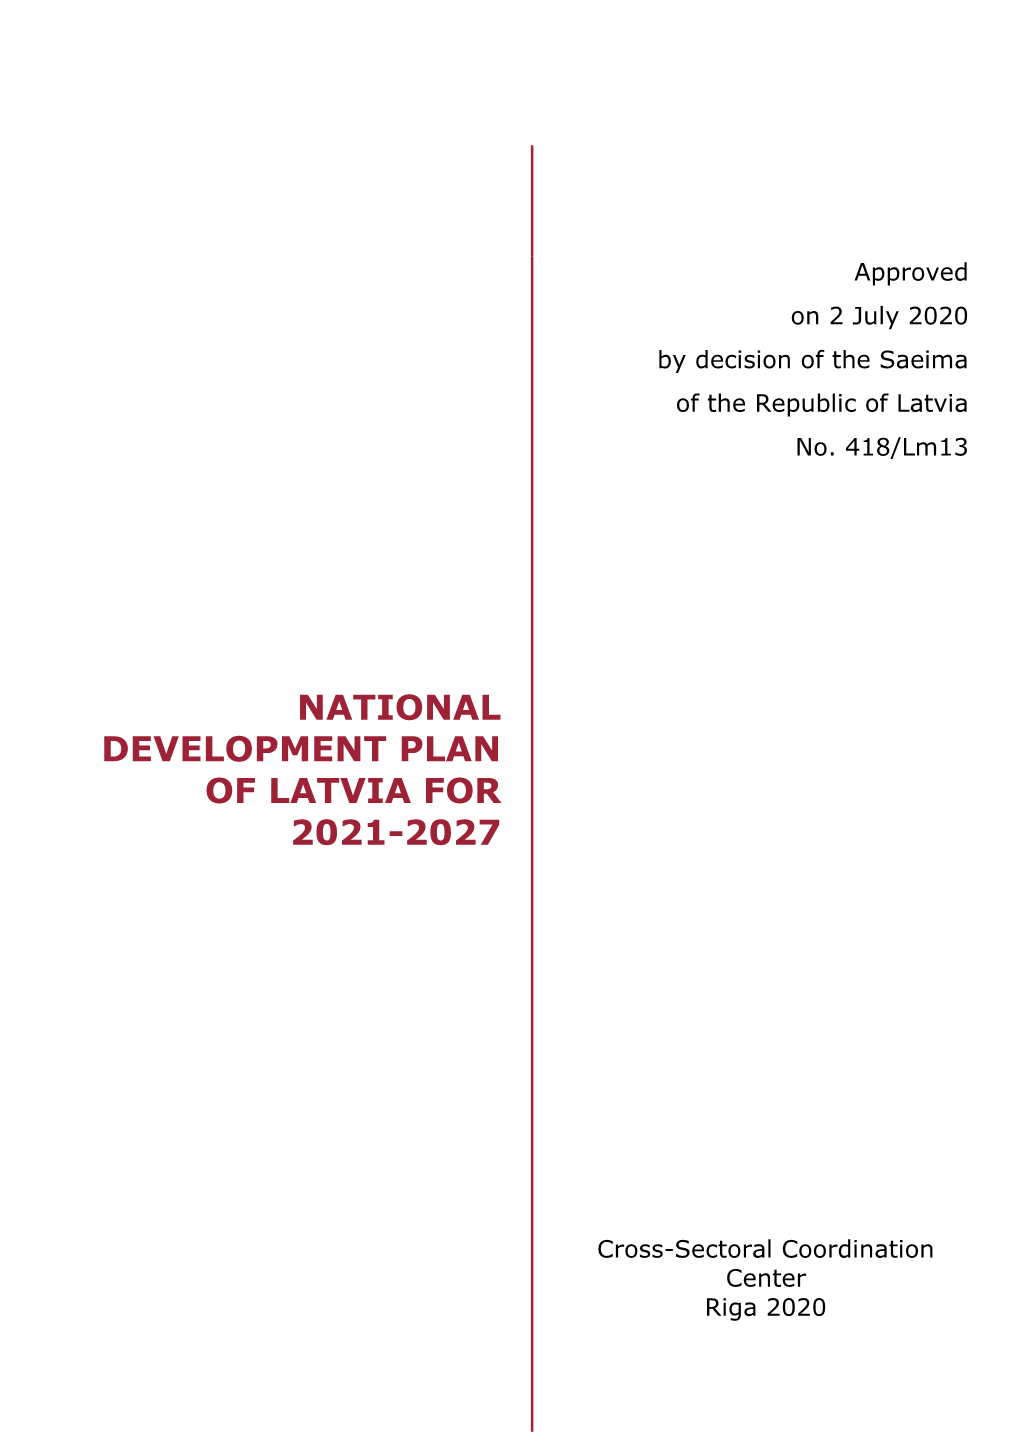 National Development Plan of Latvia for 2021-2027